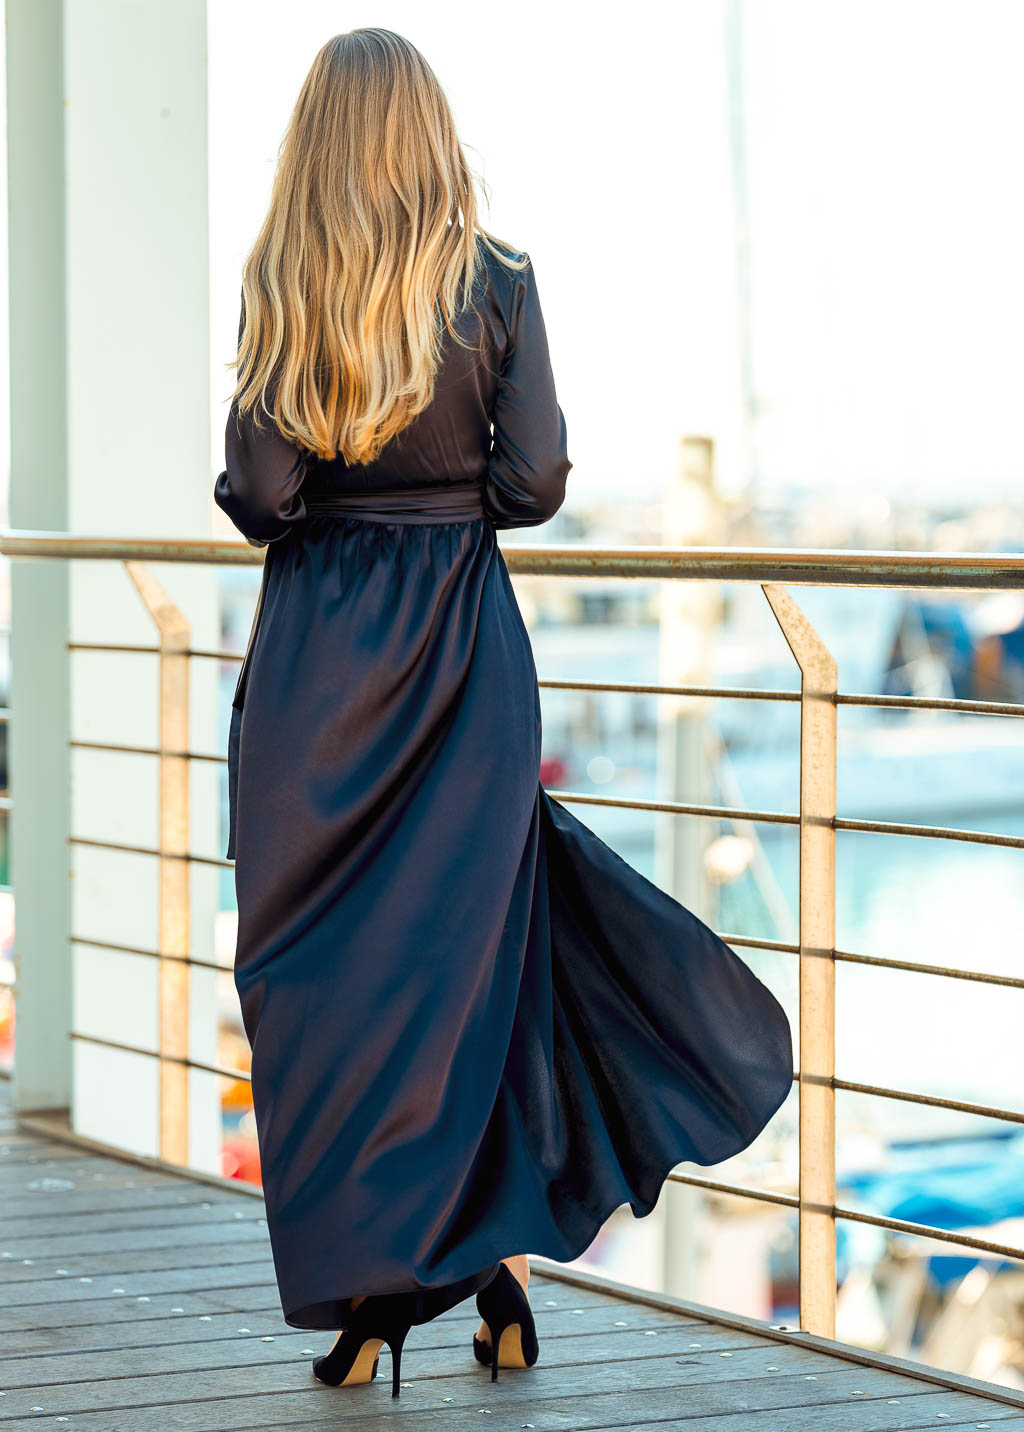 Black long wrap dress